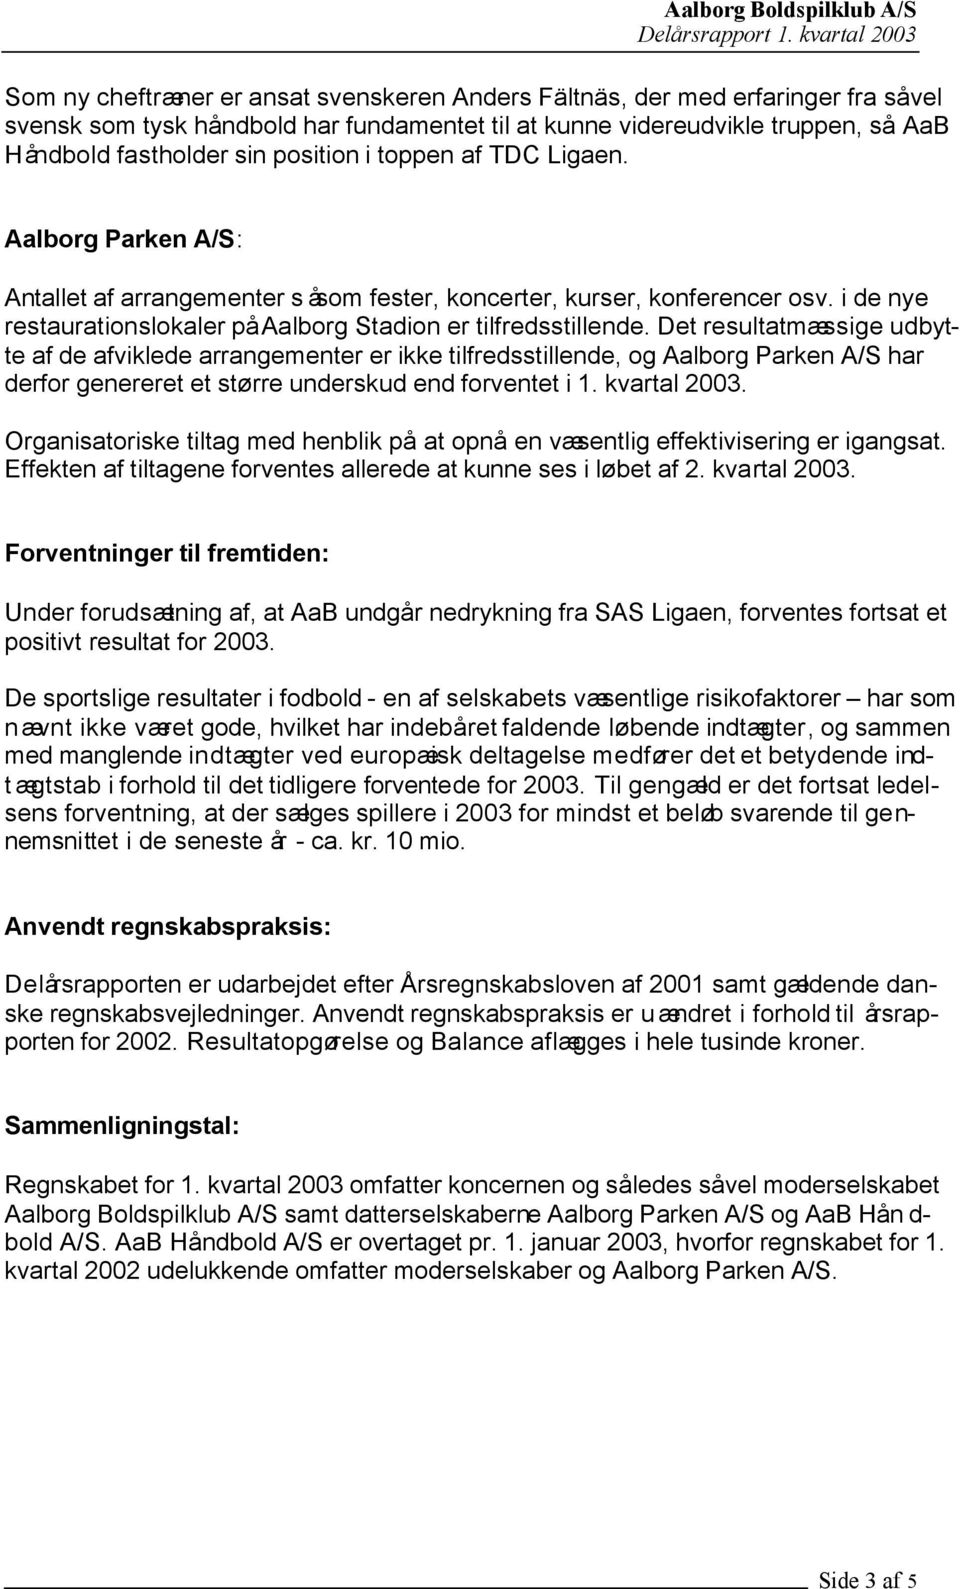 Det resultatmæssige udbytte af de afviklede arrangementer er ikke tilfredsstillende, og Aalborg Parken A/S har derfor genereret et større underskud end forventet i 1. kvartal 2003.